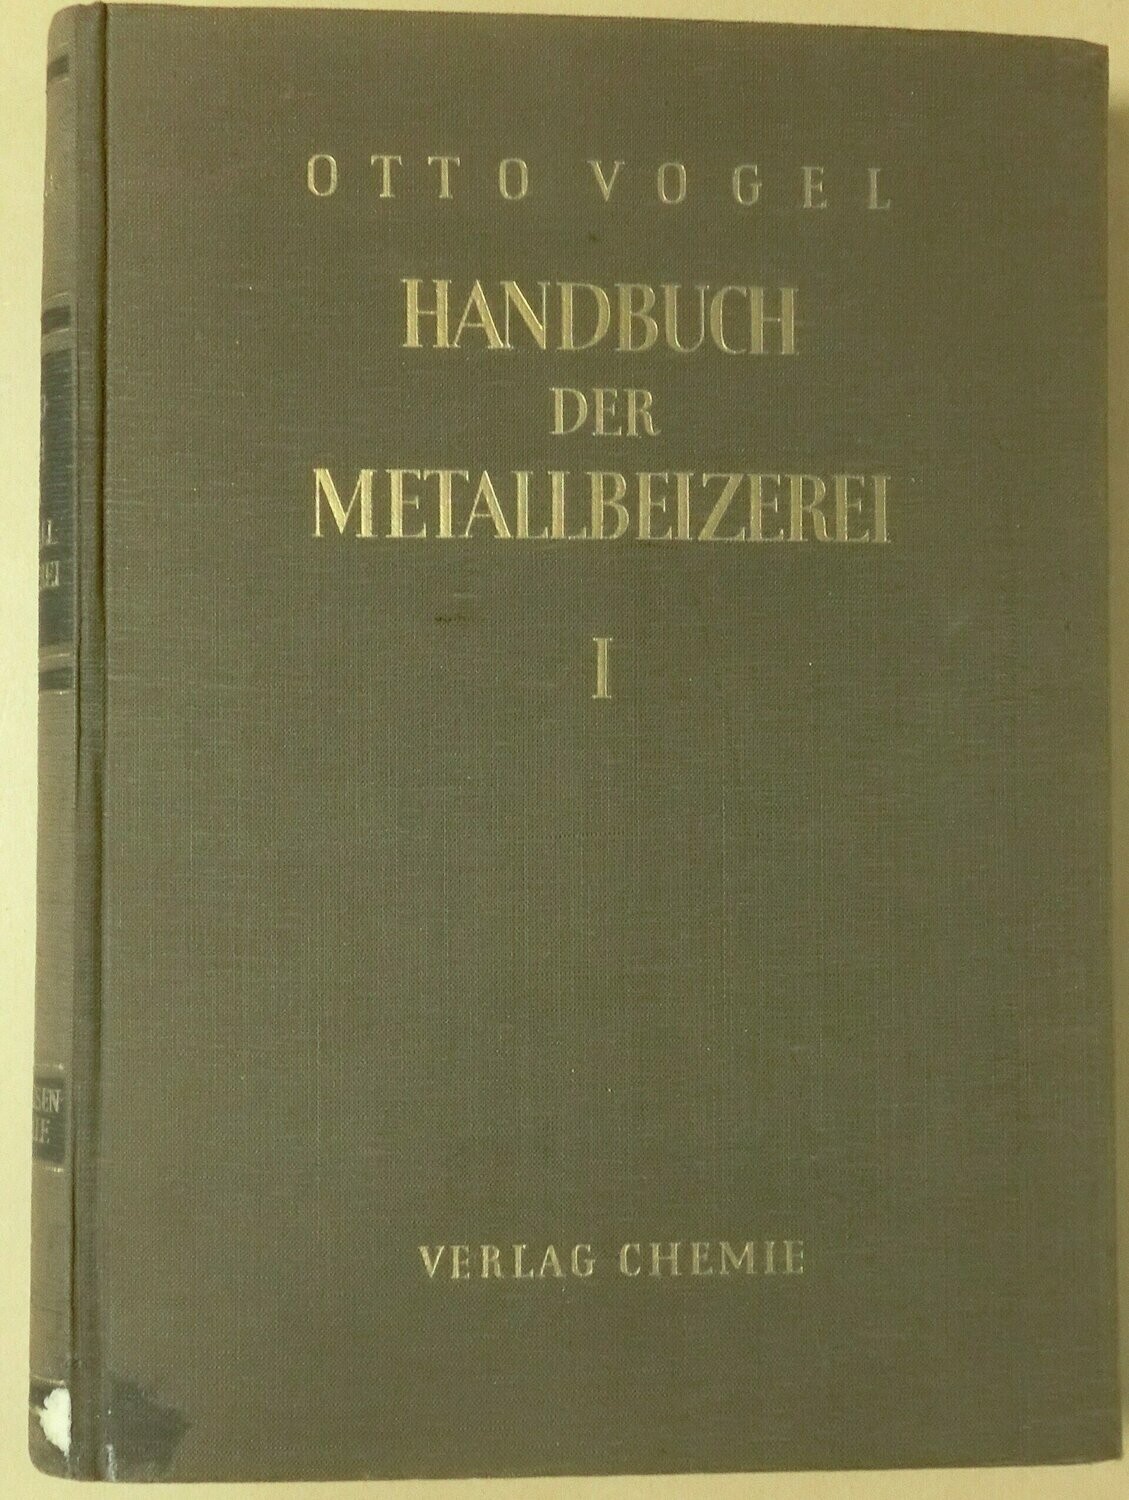 Handbuch der metallbeizerei I, Otto Vogel